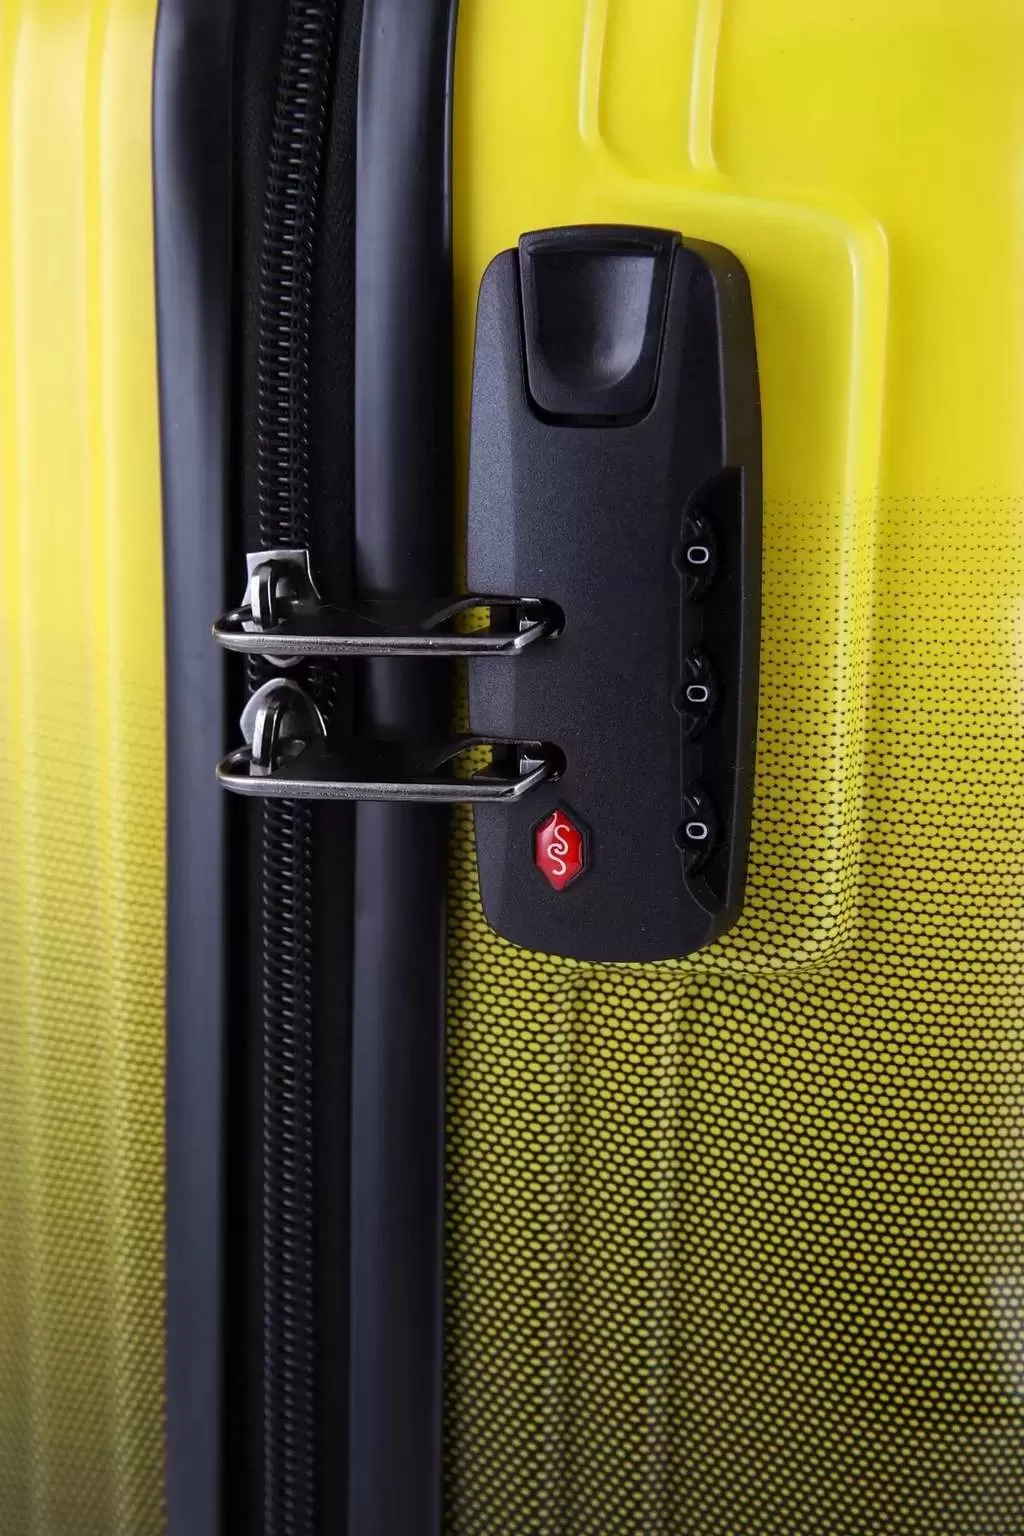 Комплект чемоданов CCS 5226 Set, черный/желтый